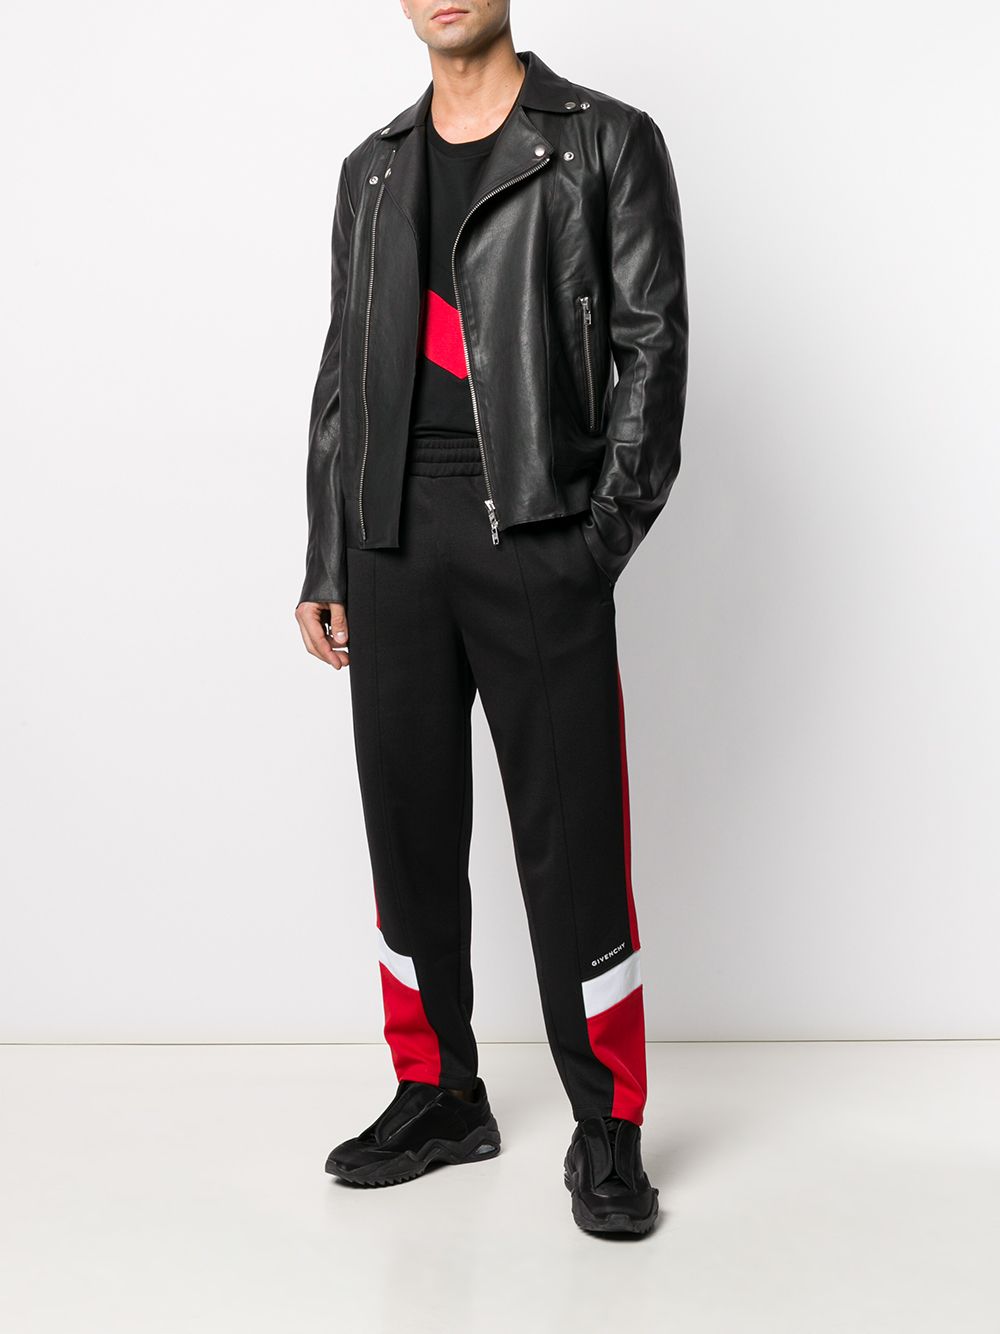 фото Givenchy спортивные брюки со вставками